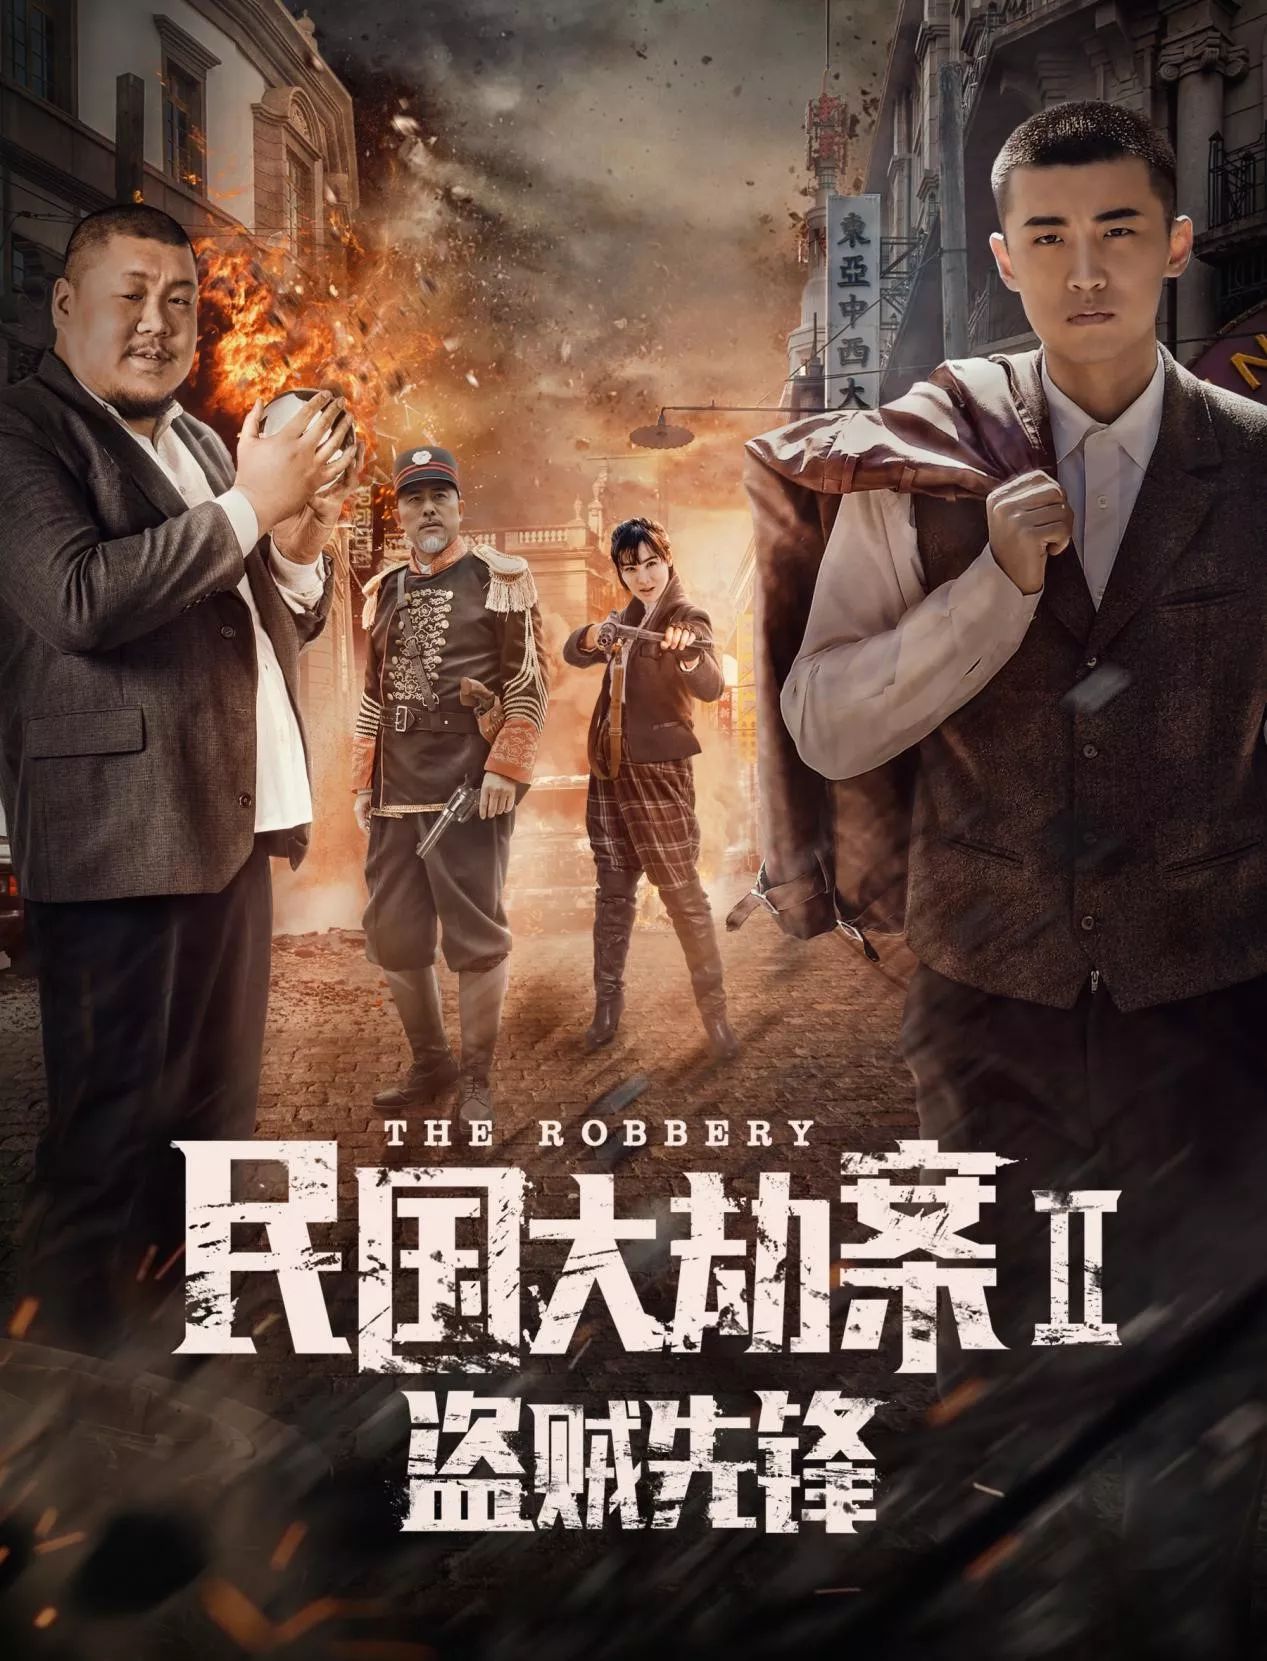 继电器戏剧“中国抢劫第二贼先驱”再现了一百年前。